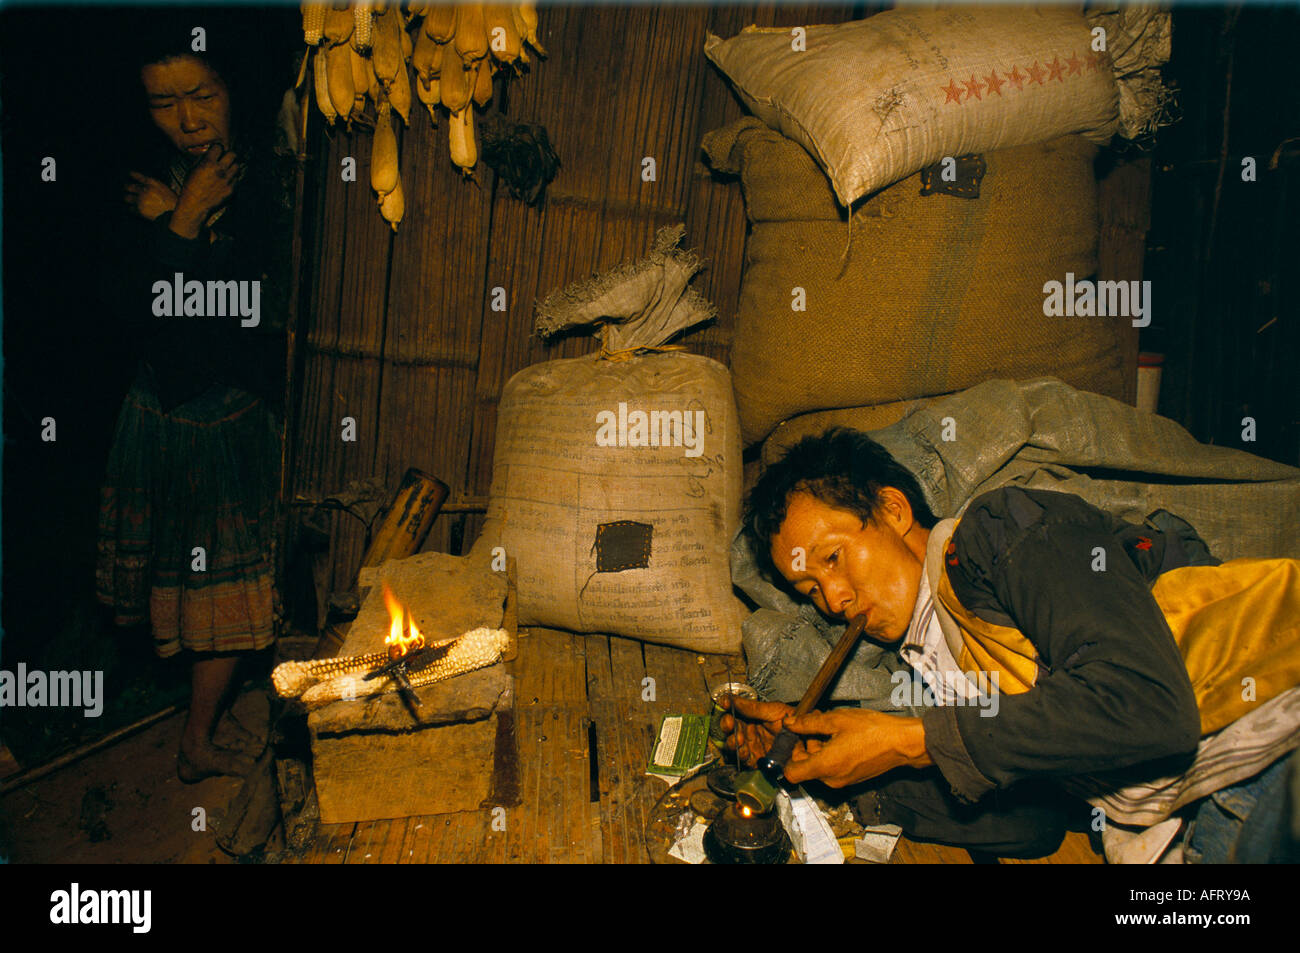 Drogensüchtigen Thailand Opiumsucht Hmong tribesman Mann in Opium Den Rauchen einer opiumpfeife. Dorf im Goldenen Dreieck 1990 S HOMER SYKES Stockfoto